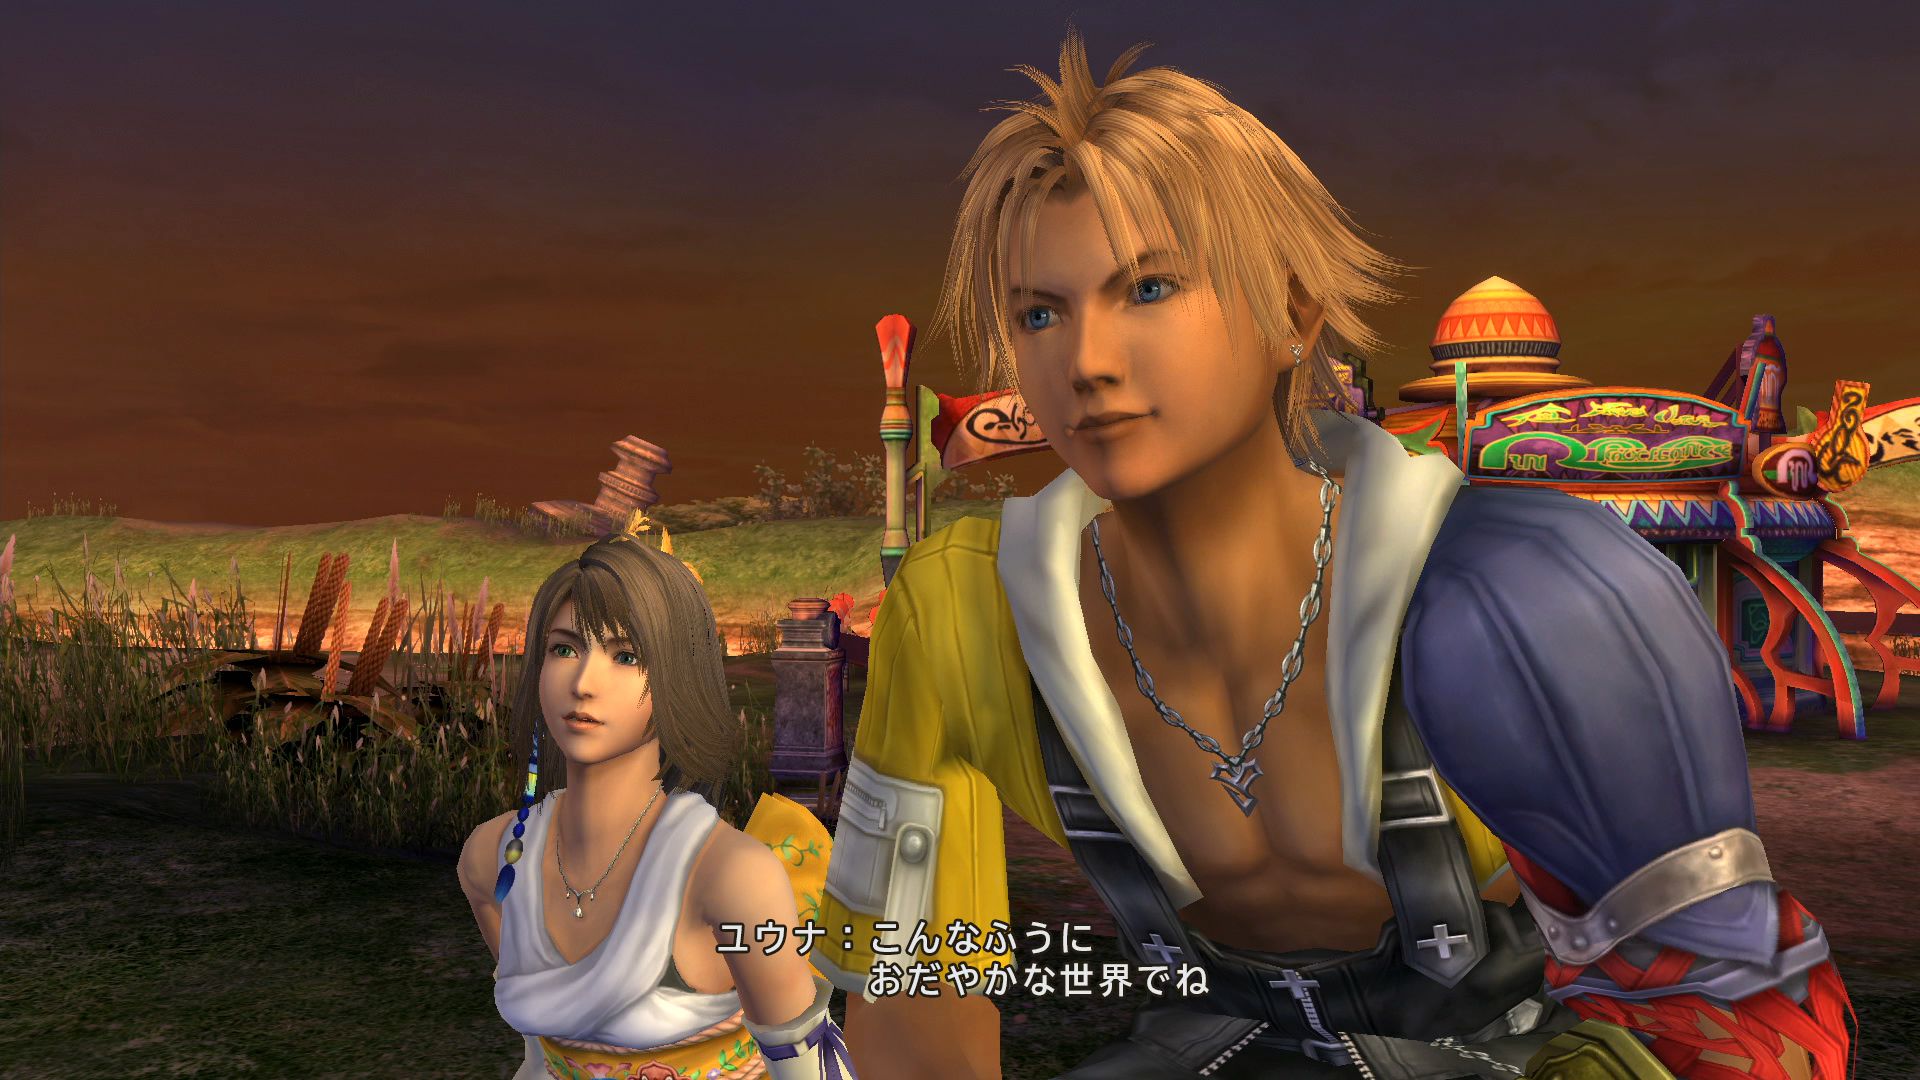 Final Fantasy X / X-2 HD Remaster bloqué à 30 FPS sur PC